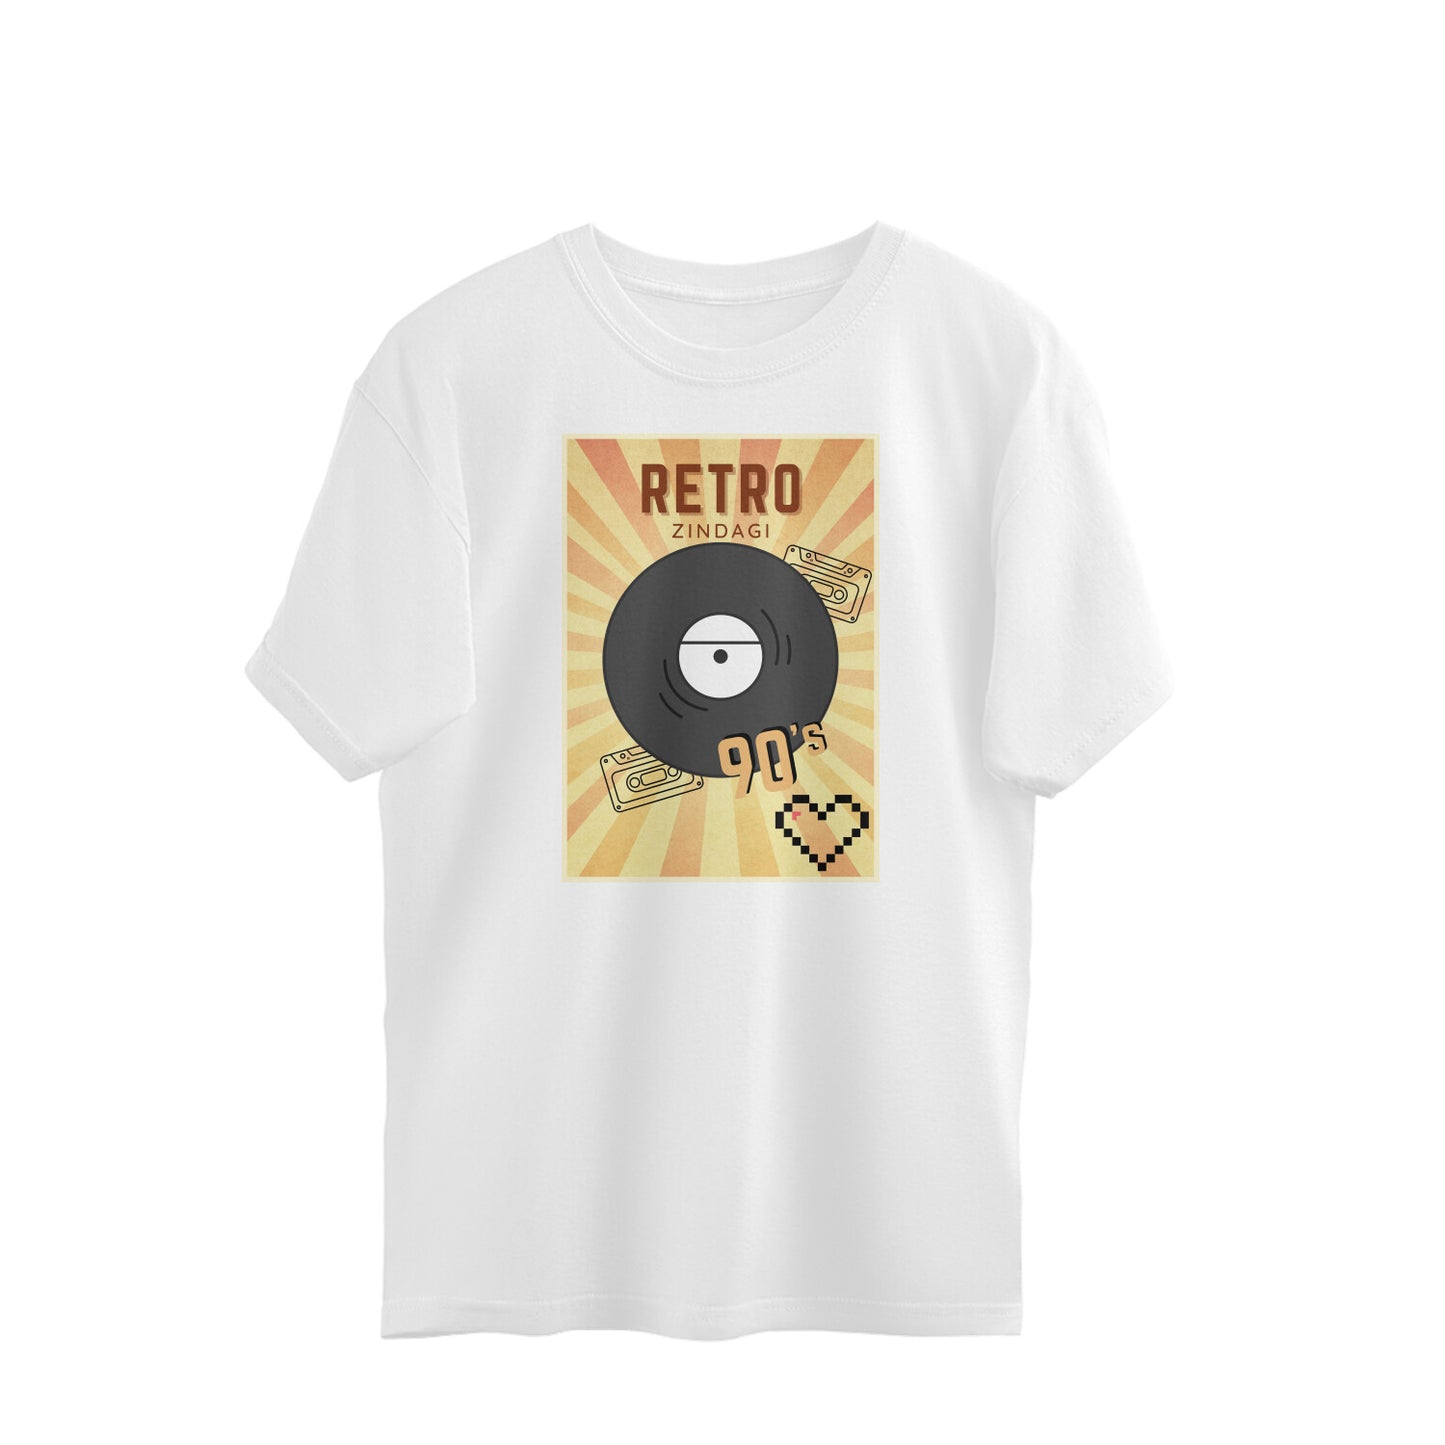 Bilkool Retro Zindagi 90's Oversized T-Shirts